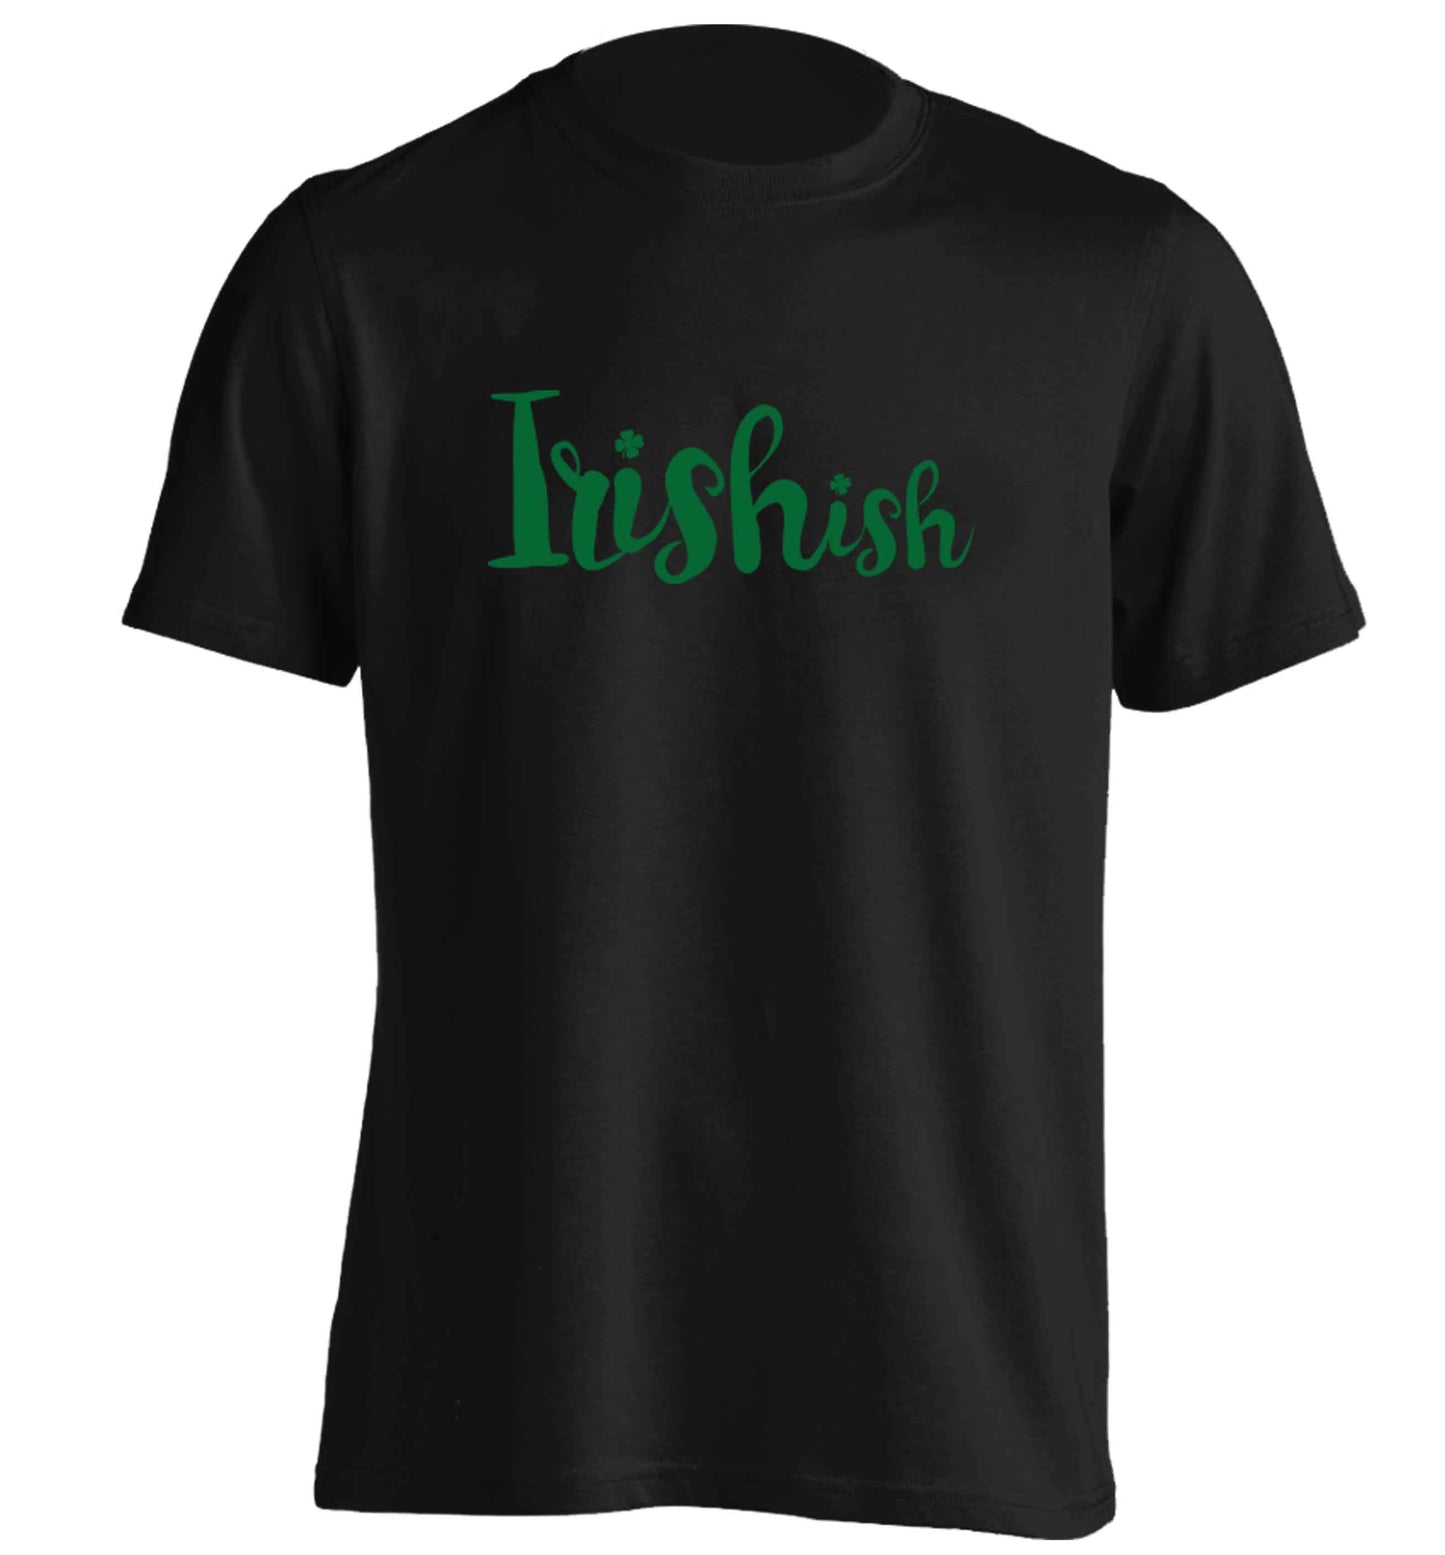 Irishish adults unisex black Tshirt 2XL